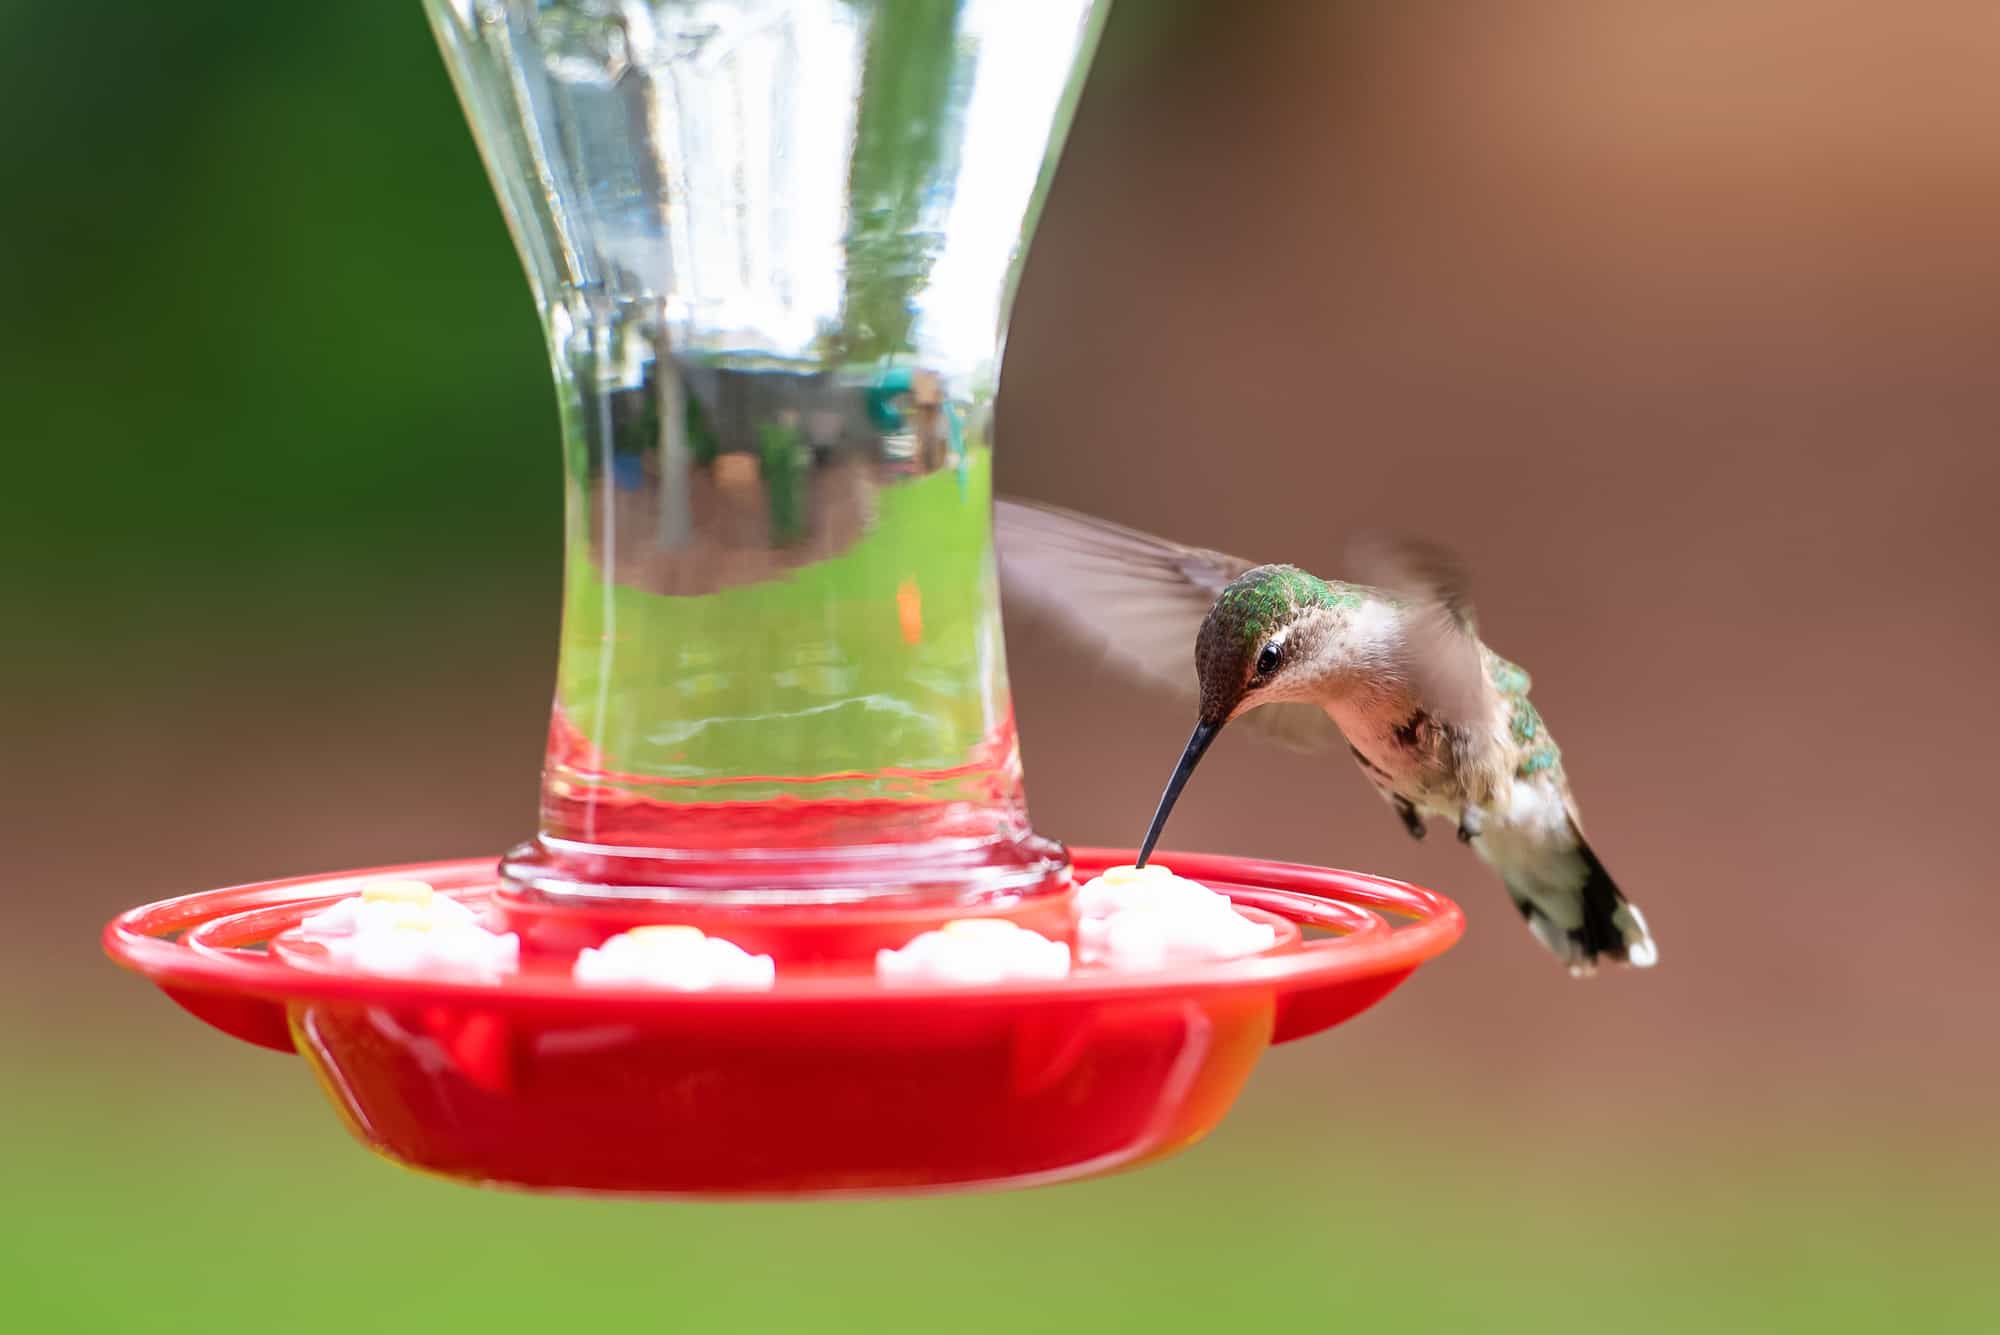 Hummingbird in Flight at a red bird feeder